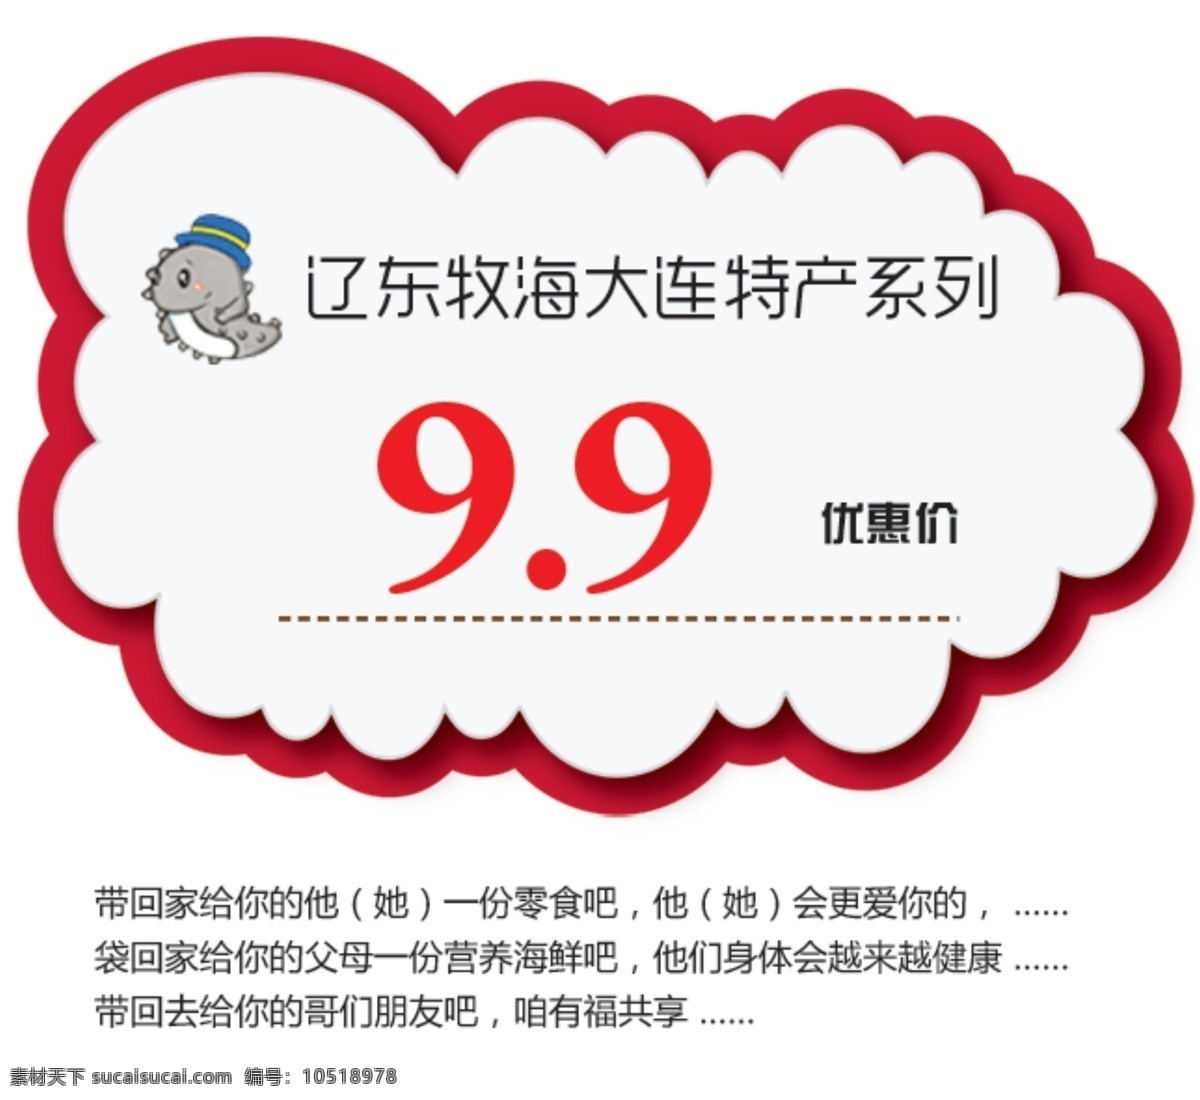 价格 标签 价格标签 网页模板 源文件 中文模版 食品价格标签 淘宝素材 淘宝促销标签